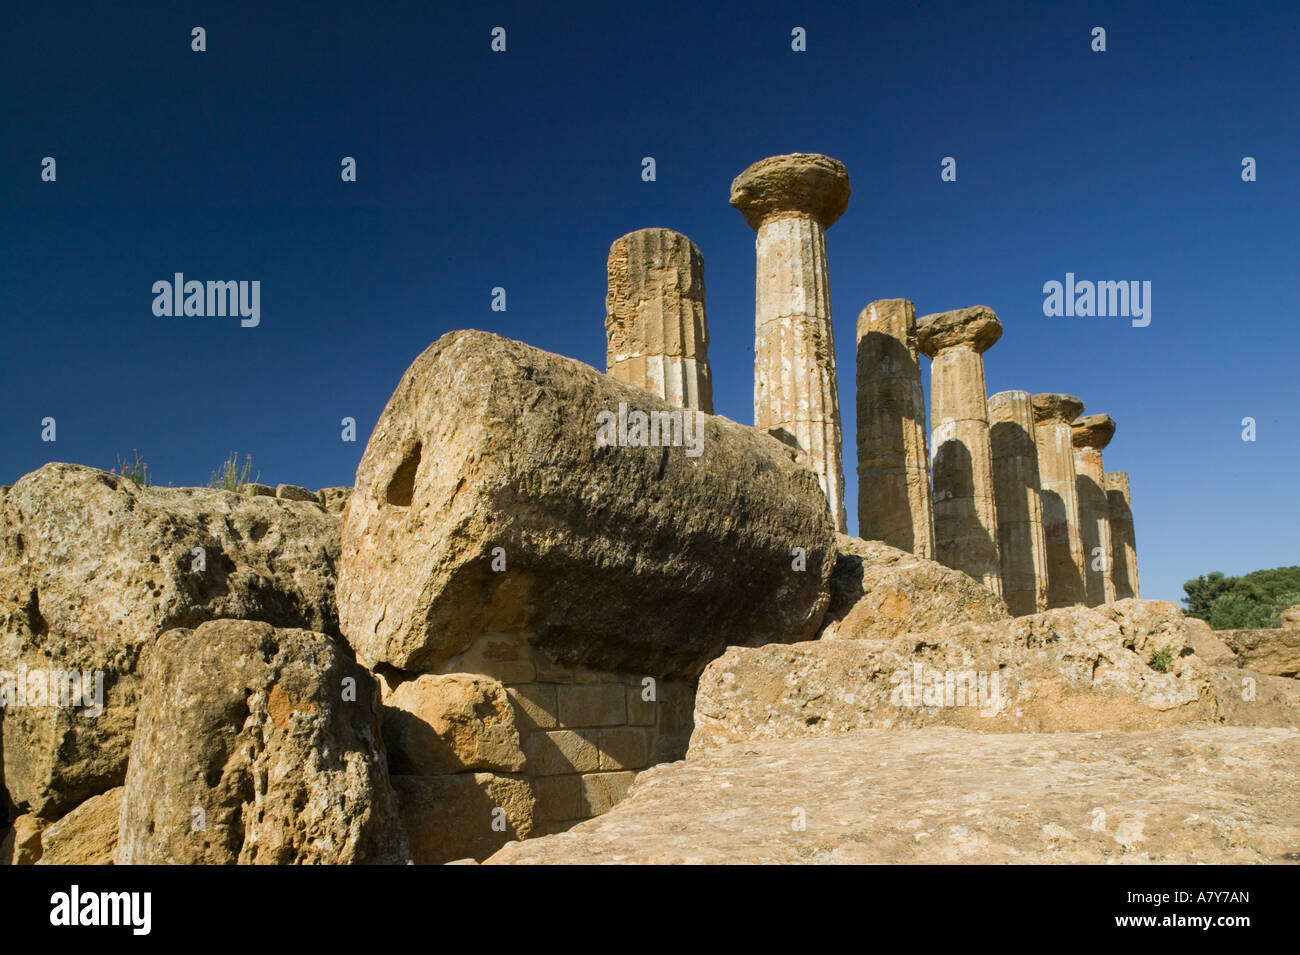 Italy, Sicily, Agrigento, La Valle dei Templi, Valley of the Temples, Ruins of the Temple of Hercules (Tempio di Ercole) Stock Photo